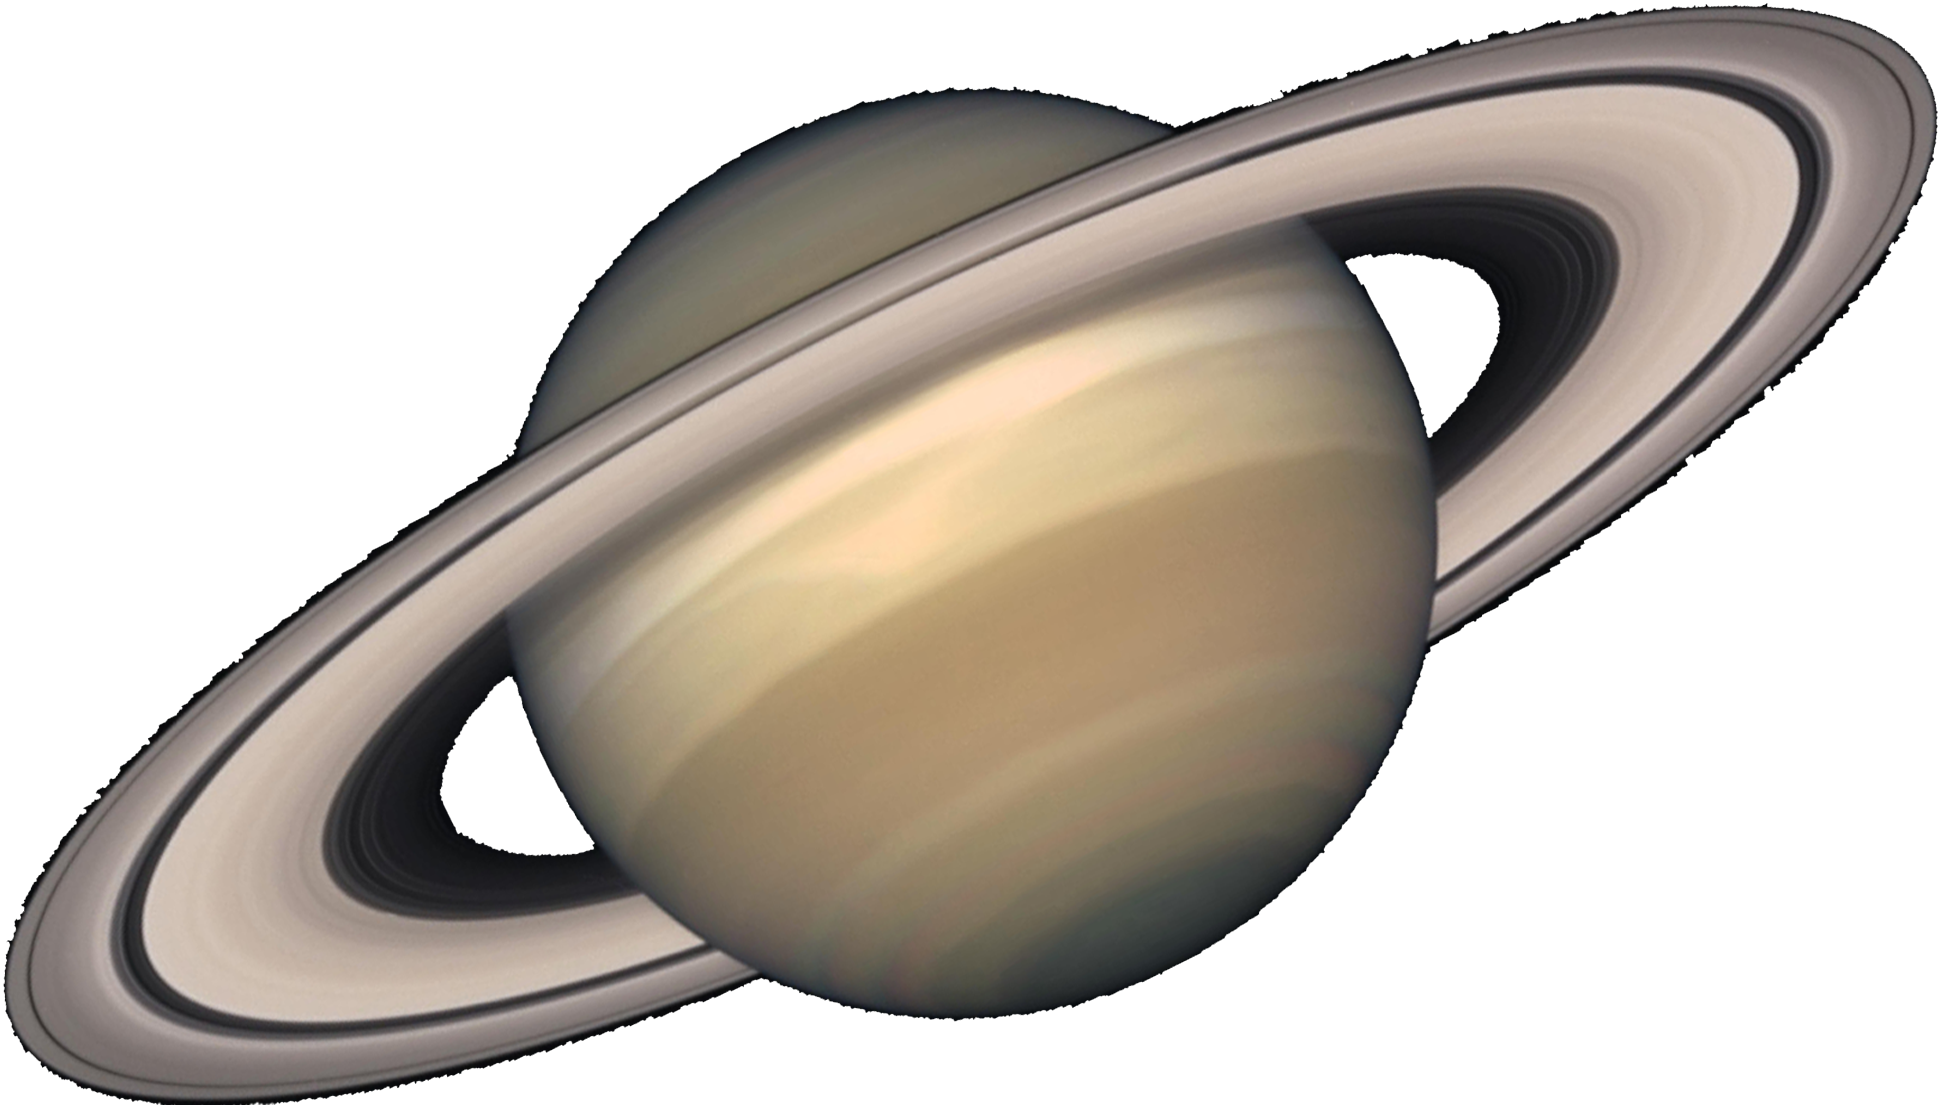 Планета сатурн картинка для детей. Сатурн Планета солнечной системы. Планета Сатурн для детей. Планеты солнечной системы Сатурн картинки. Планета без фона.